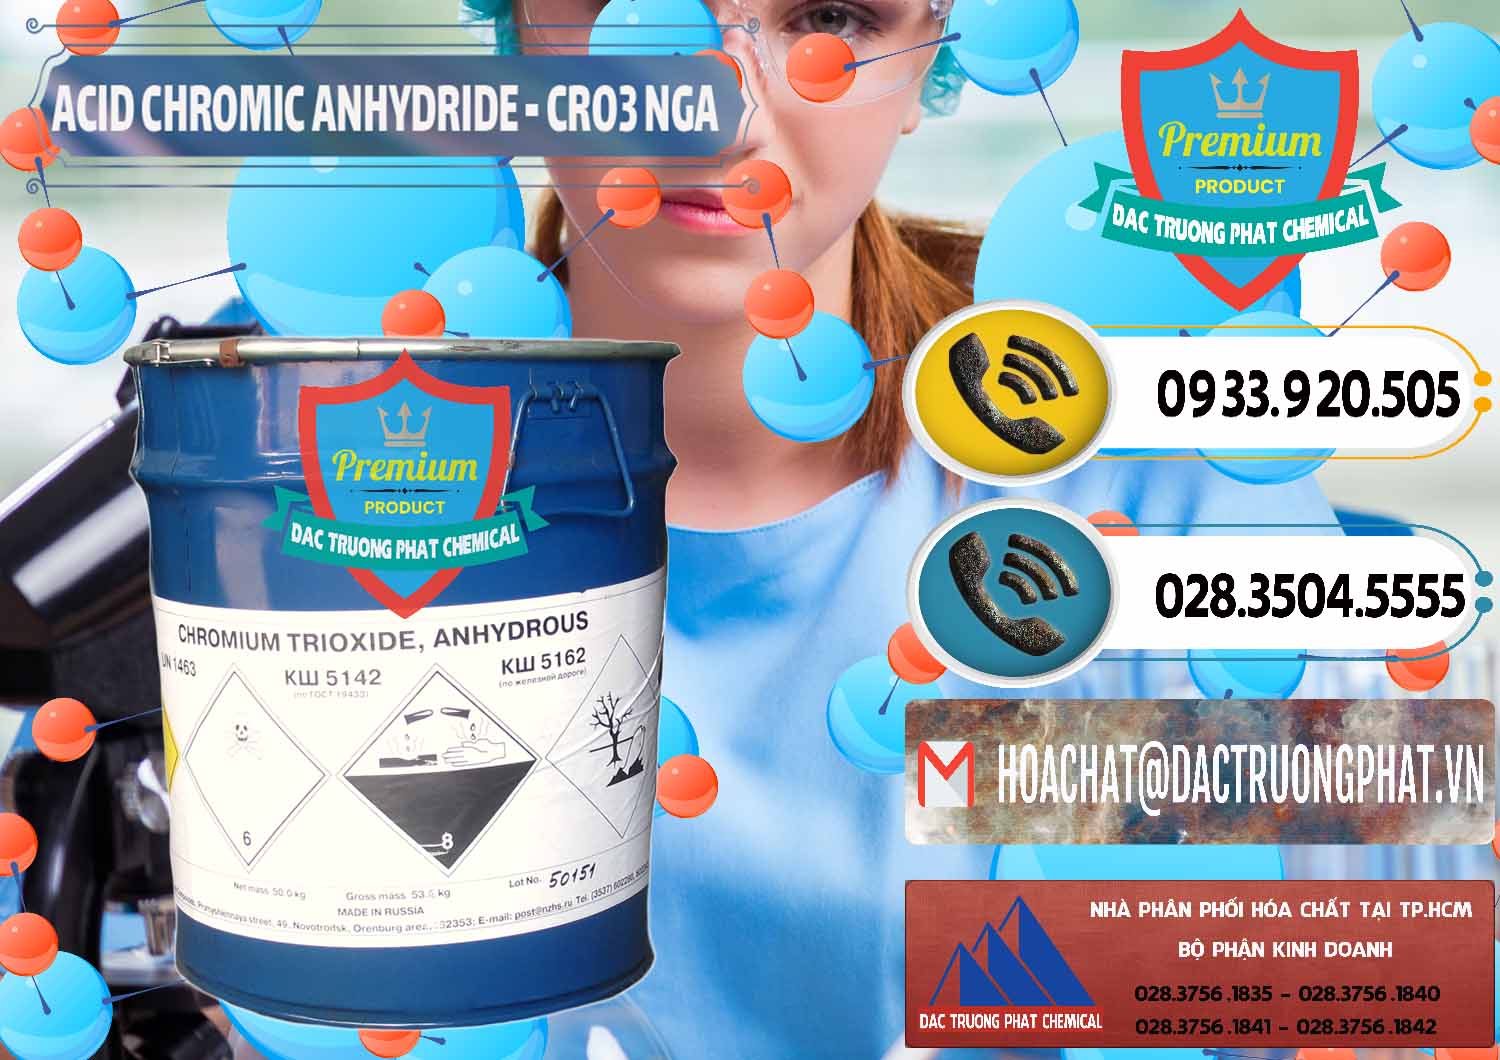 Đơn vị kinh doanh và bán Acid Chromic Anhydride - Cromic CRO3 Nga Russia - 0006 - Công ty chuyên phân phối ( bán ) hóa chất tại TP.HCM - hoachatdetnhuom.vn